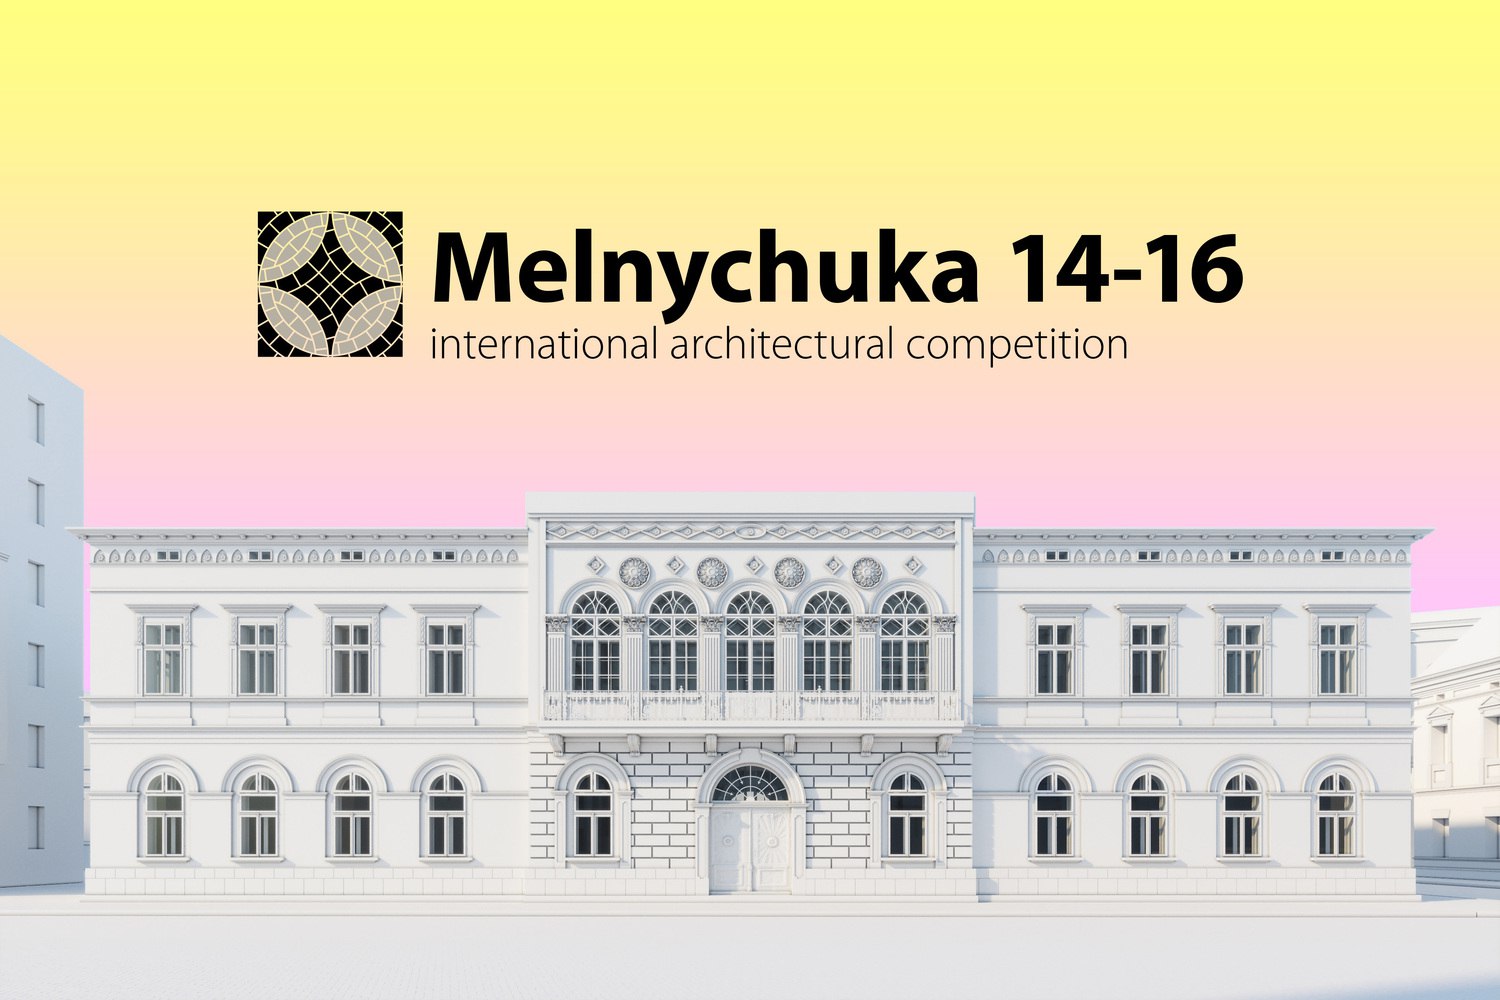 “Ми в пошуку оптимальних рішень”, – співорганізатори про результати Міжнародного архітектурного конкурсу з реставрації будівель на Мельничука, 14-16